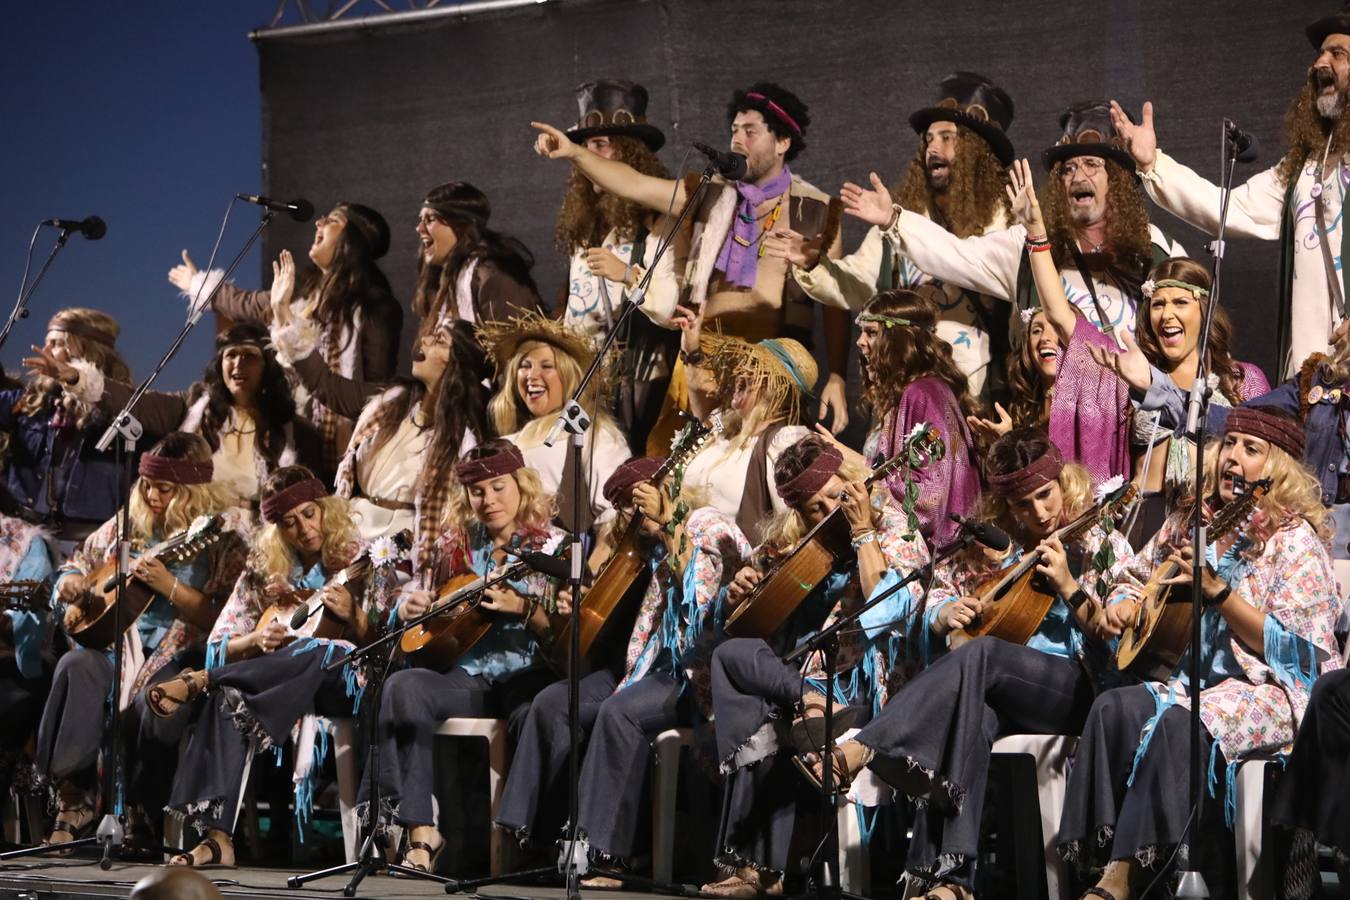 El Carnaval de Cádiz vuelve a celebrar el recuerdo de Juan Carlos Aragón